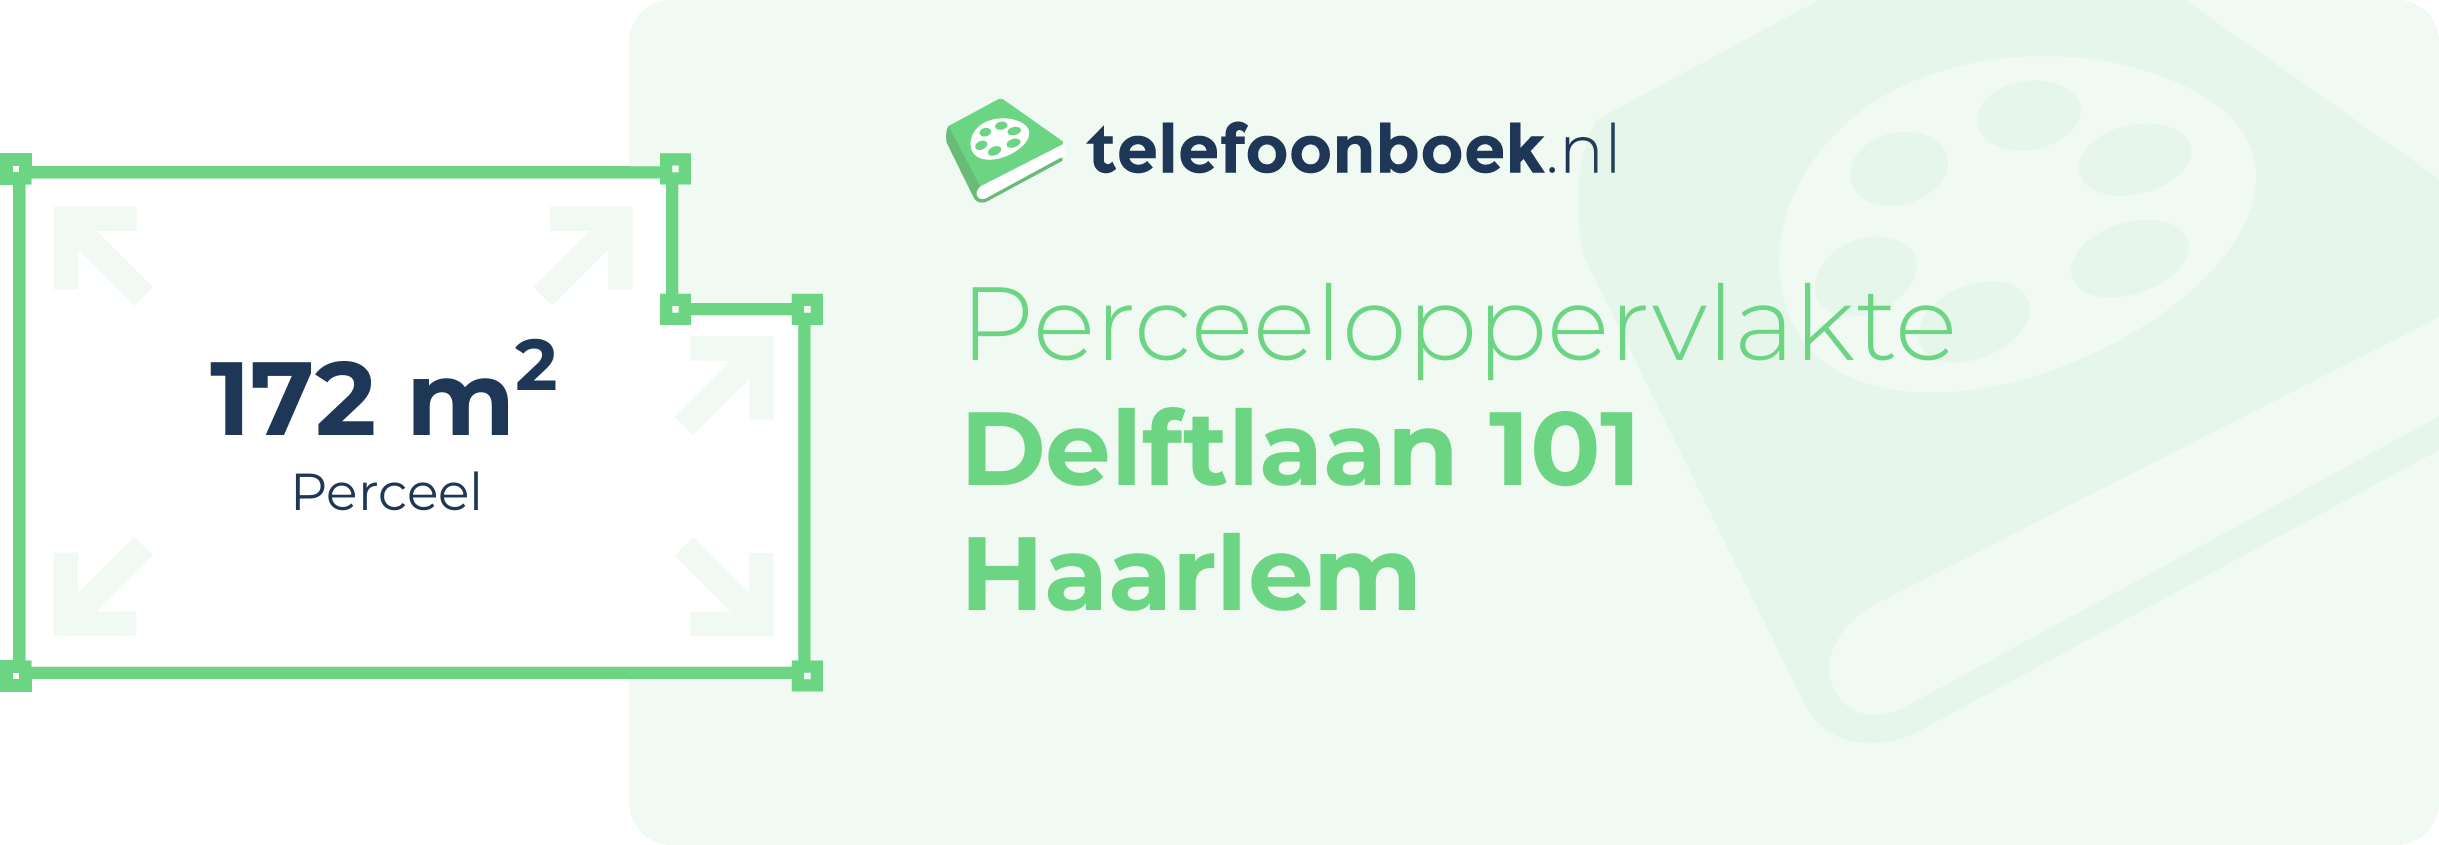 Perceeloppervlakte Delftlaan 101 Haarlem